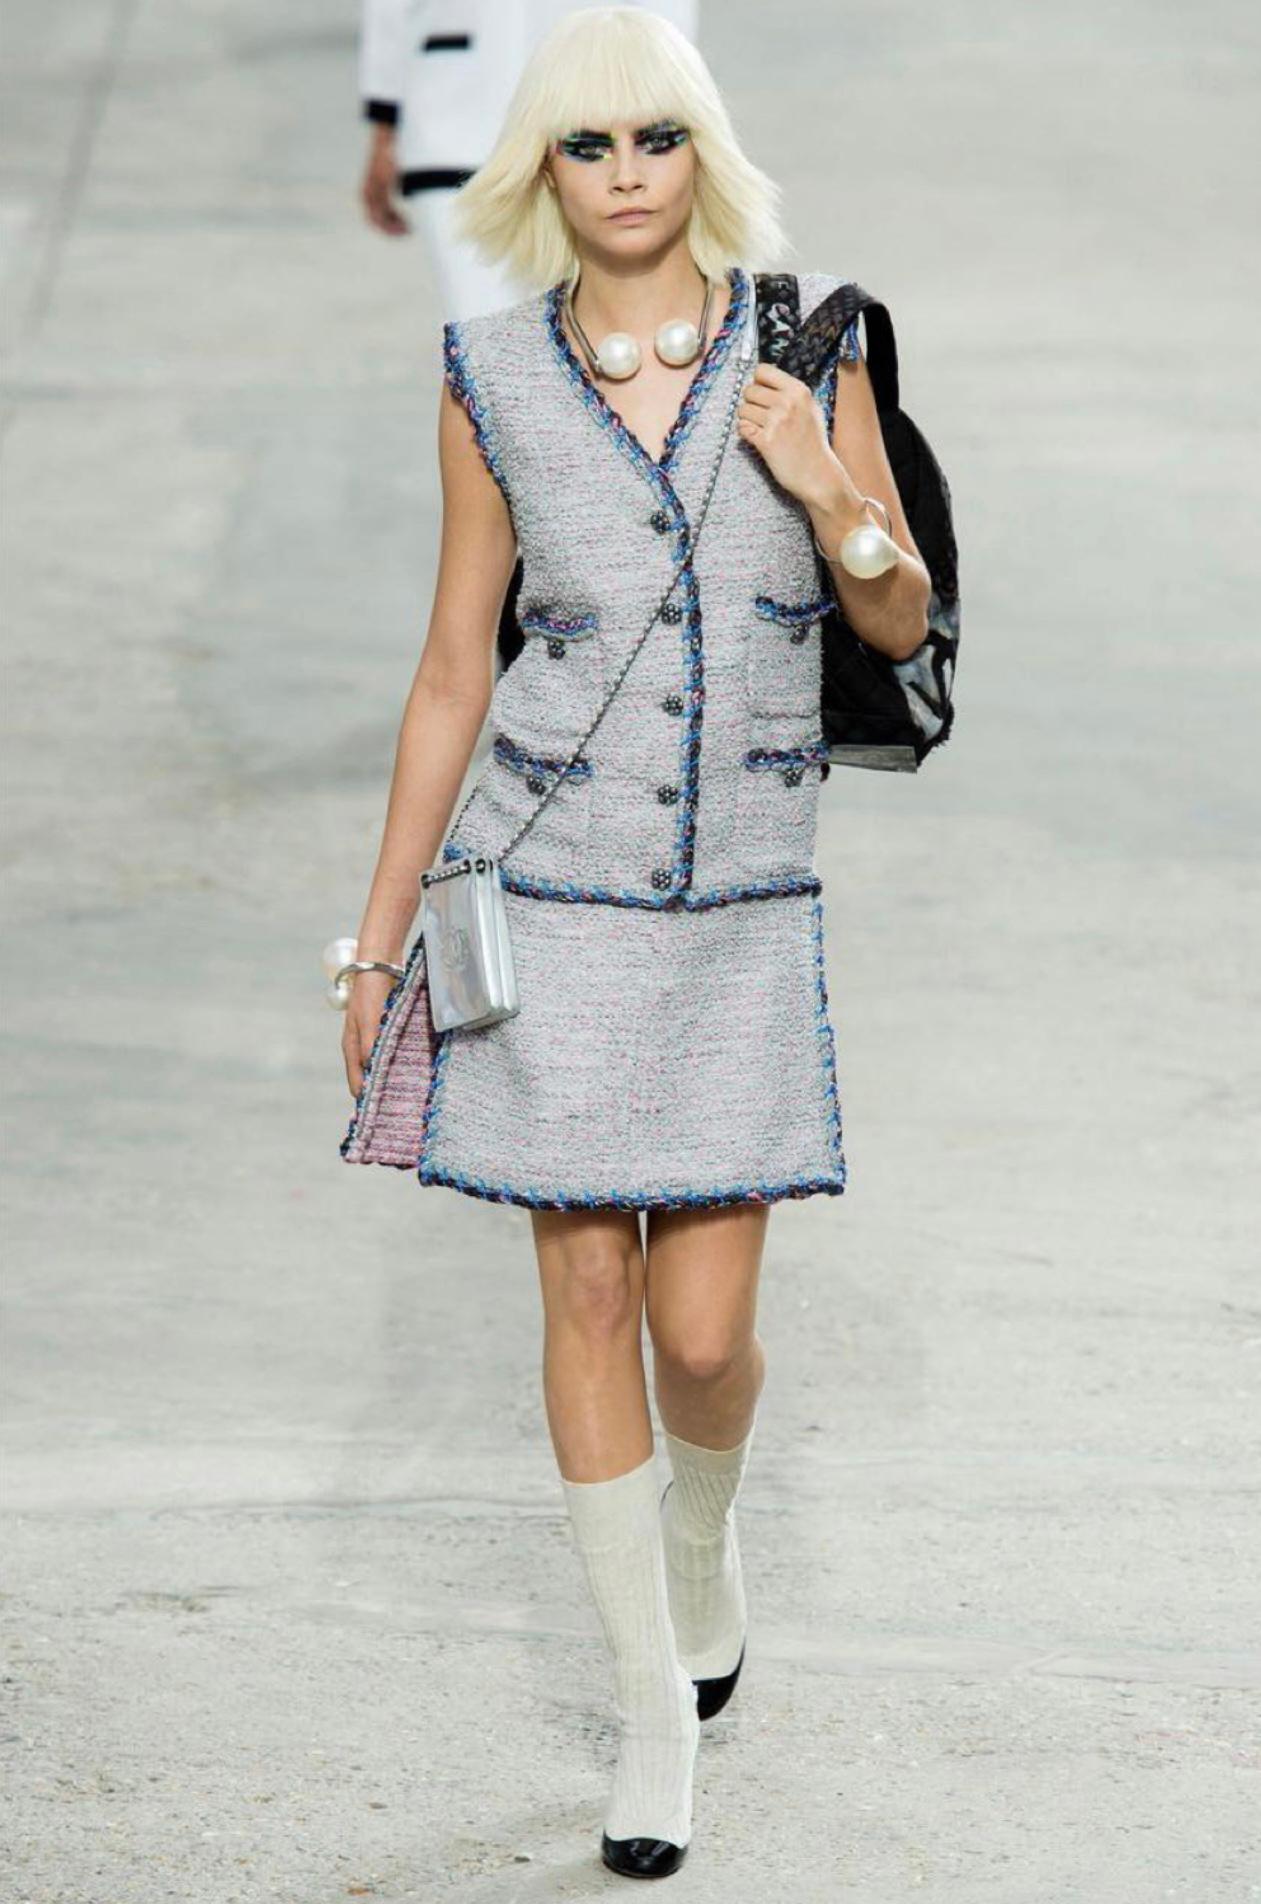 Nouvelle célèbre robe en tweed marine Chanel de la Collection 'Contemporary Art' printemps 2014 de Karl Lagerfeld.
Prix boutique 8,760
Modèle vu sur de nombreux Look on Catwalk !
Taille 36 FR. Jamais porté.